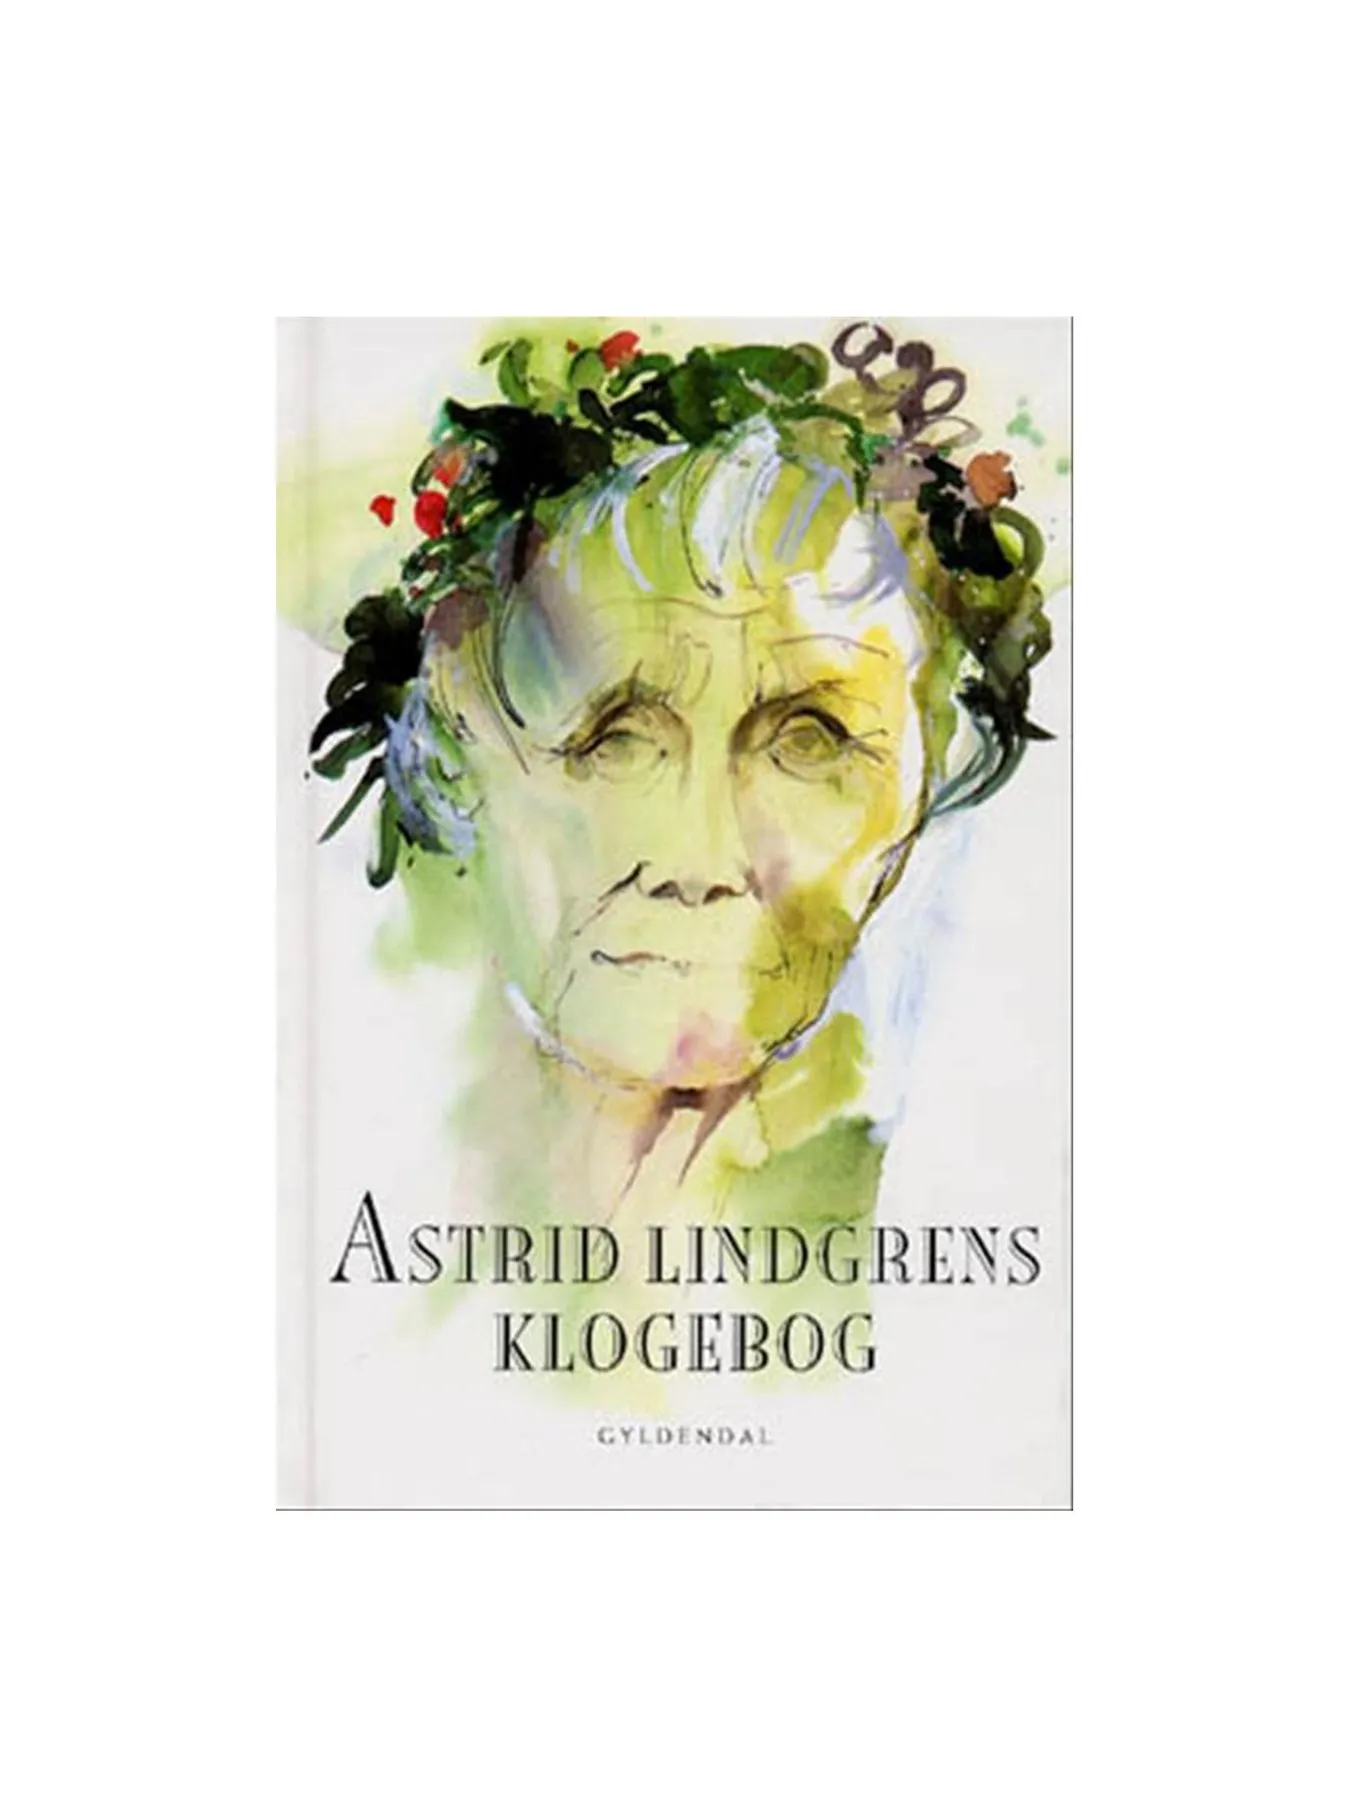 Astrid Lindgrens klogebog (Danish)